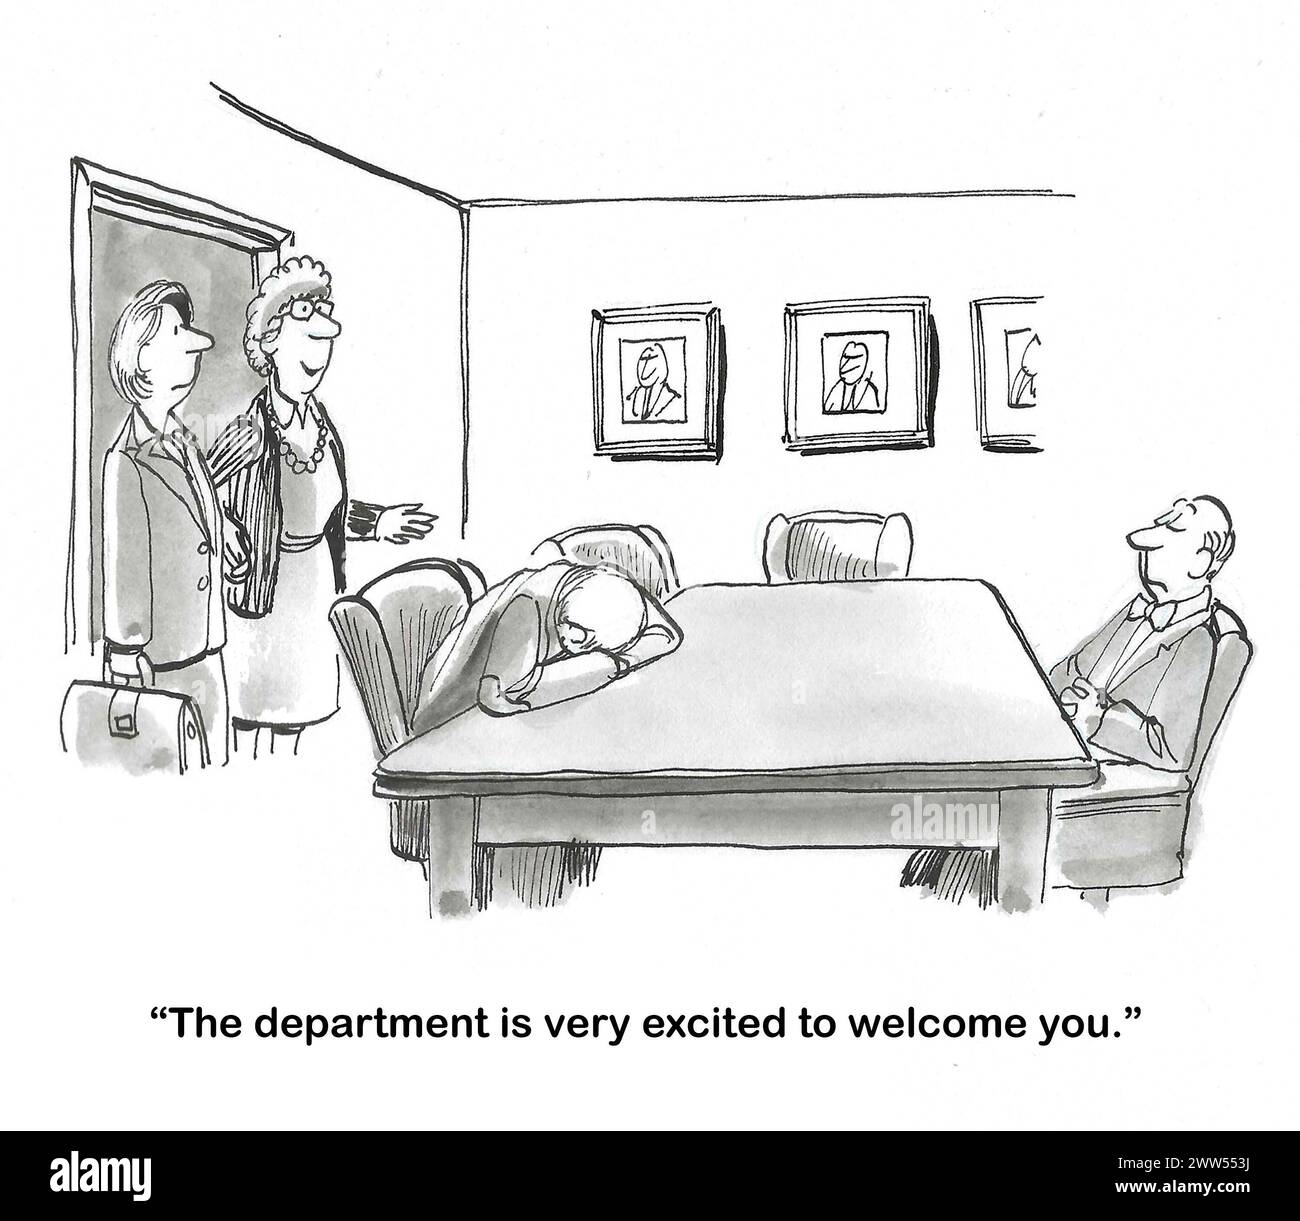 BW dessins animés d'un département traitant le nouvel employé grossièrement. Banque D'Images